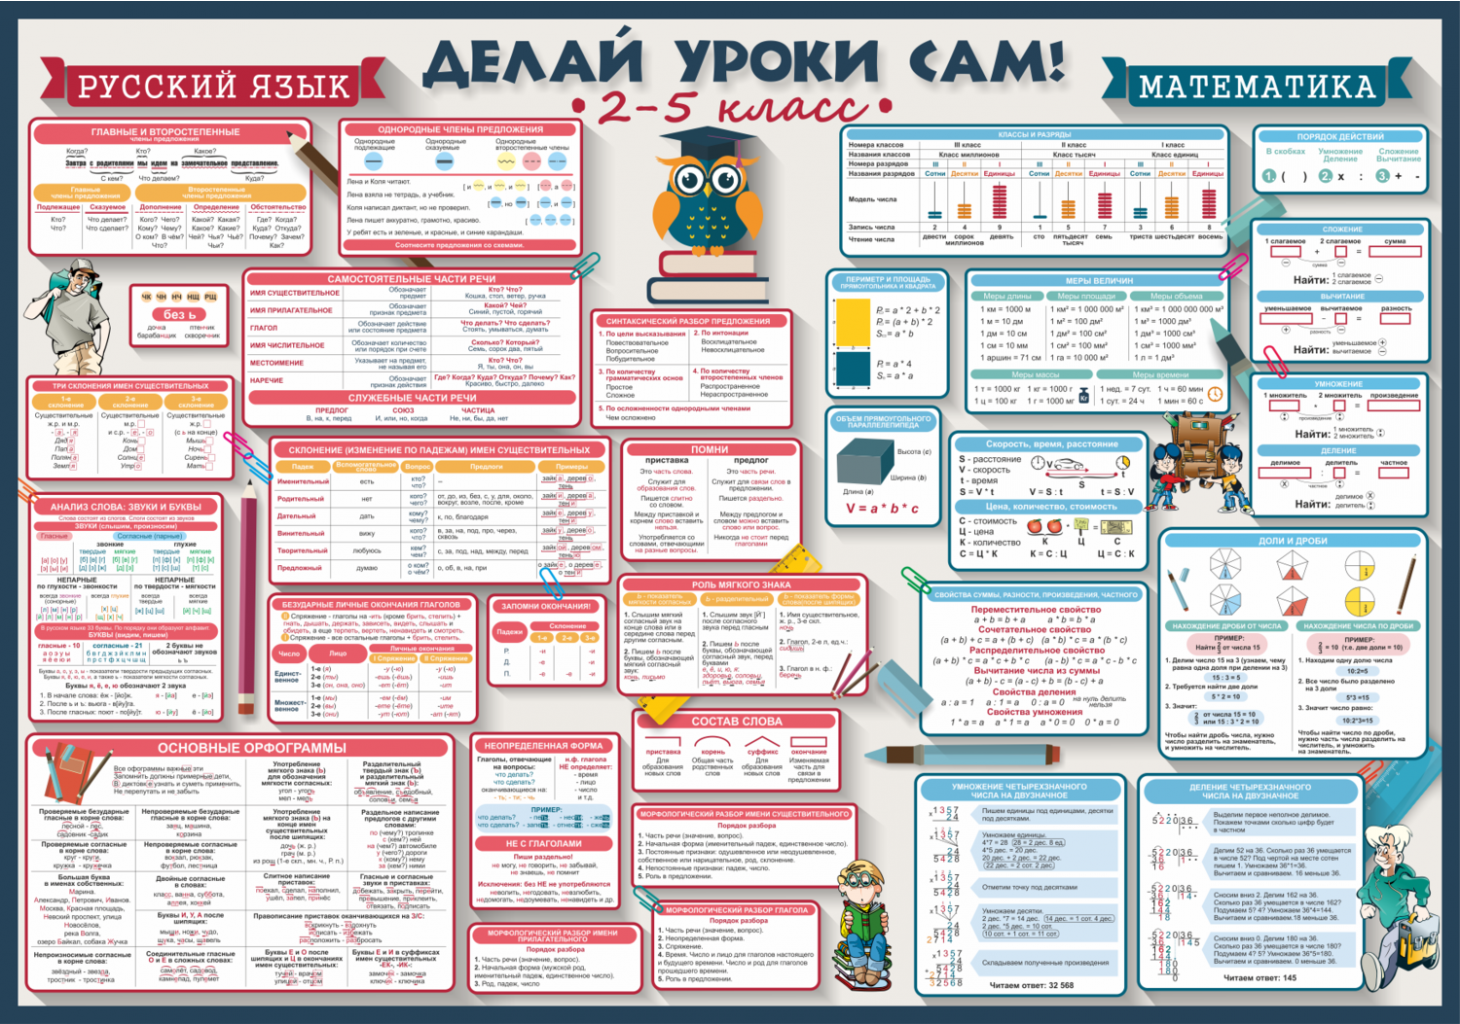 Русский язык перед 3 классом. Делай уроки сам плакаты. Плакаты для начальной школы. Делай уроки сам плакаты 2-5 класс. Плакат с правилами.